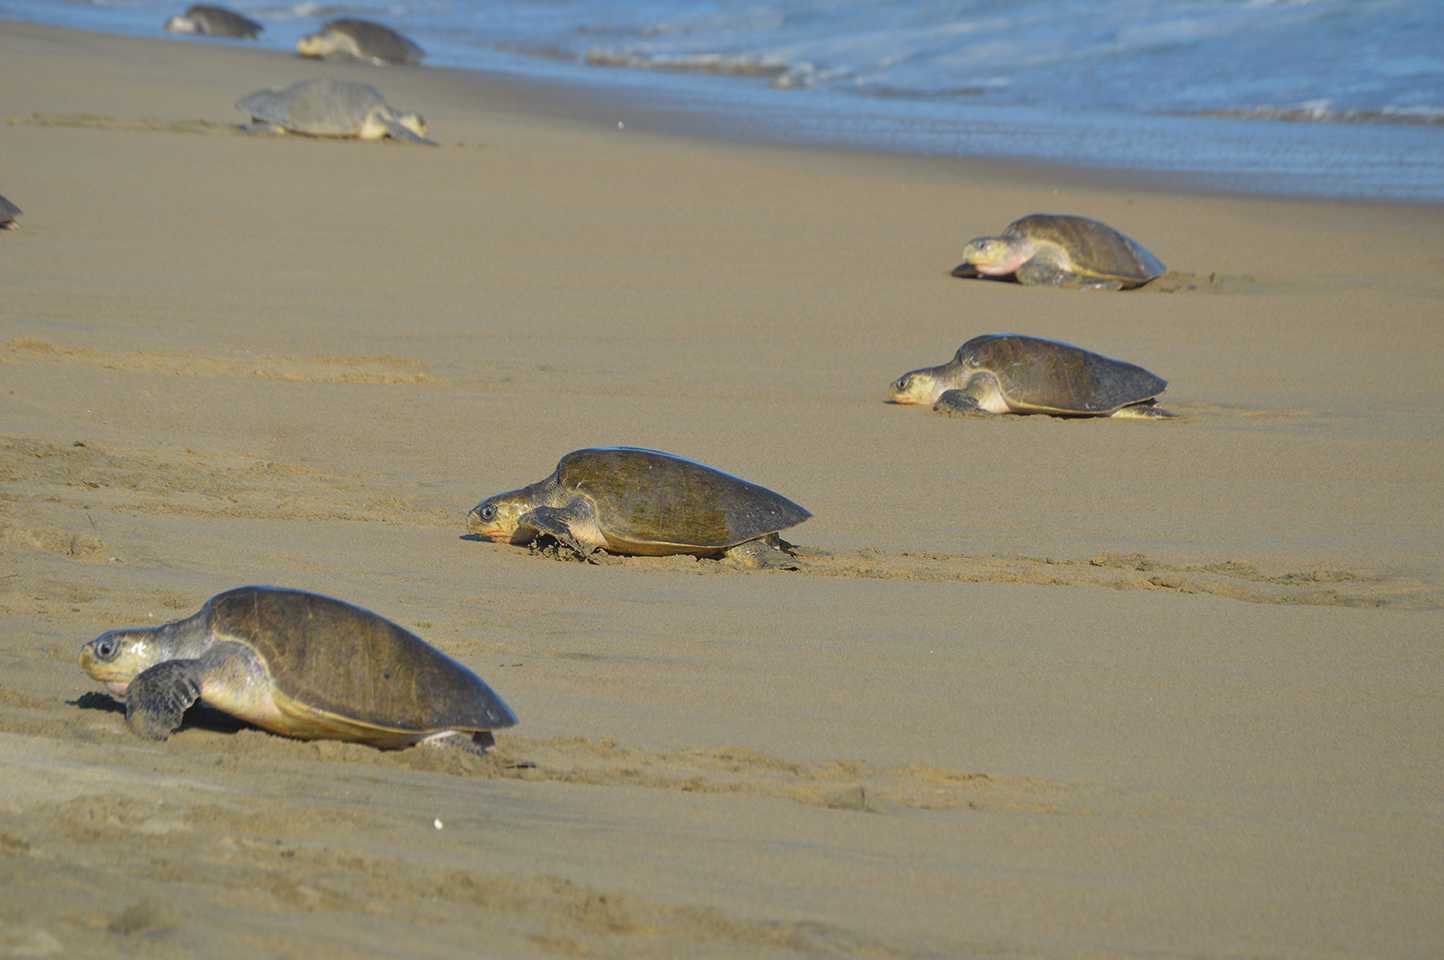 Para la protección de estas especies marinas enlistadas en la NOM-059-SEMARNAT-2010, bajo la categoría de Peligro de Extinción, la Comisión Nacional de Áreas Naturales Protegidas cuenta con 32 campamentos tortugueros.